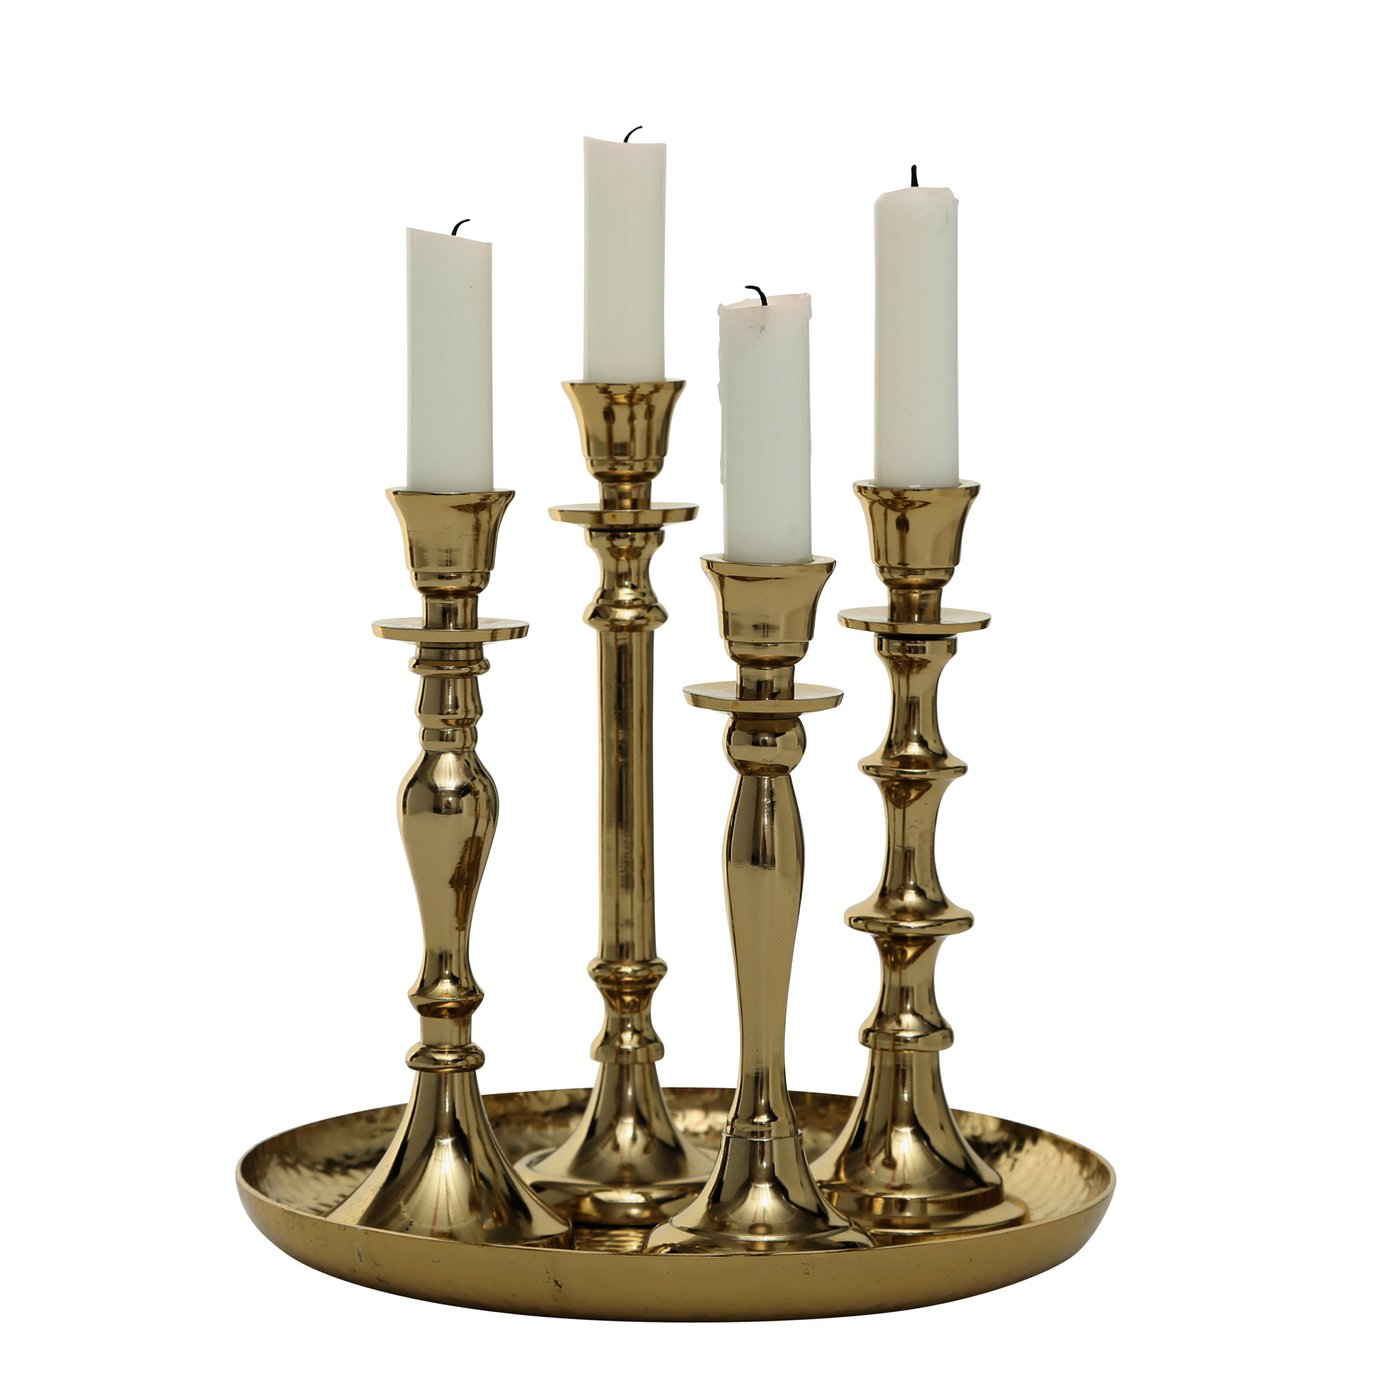 Boltze Stabkerzenhalter gold "Zeus" Kerzenständer Kerzenleuchter mit Deko Teller, 1019024, 4020607701281